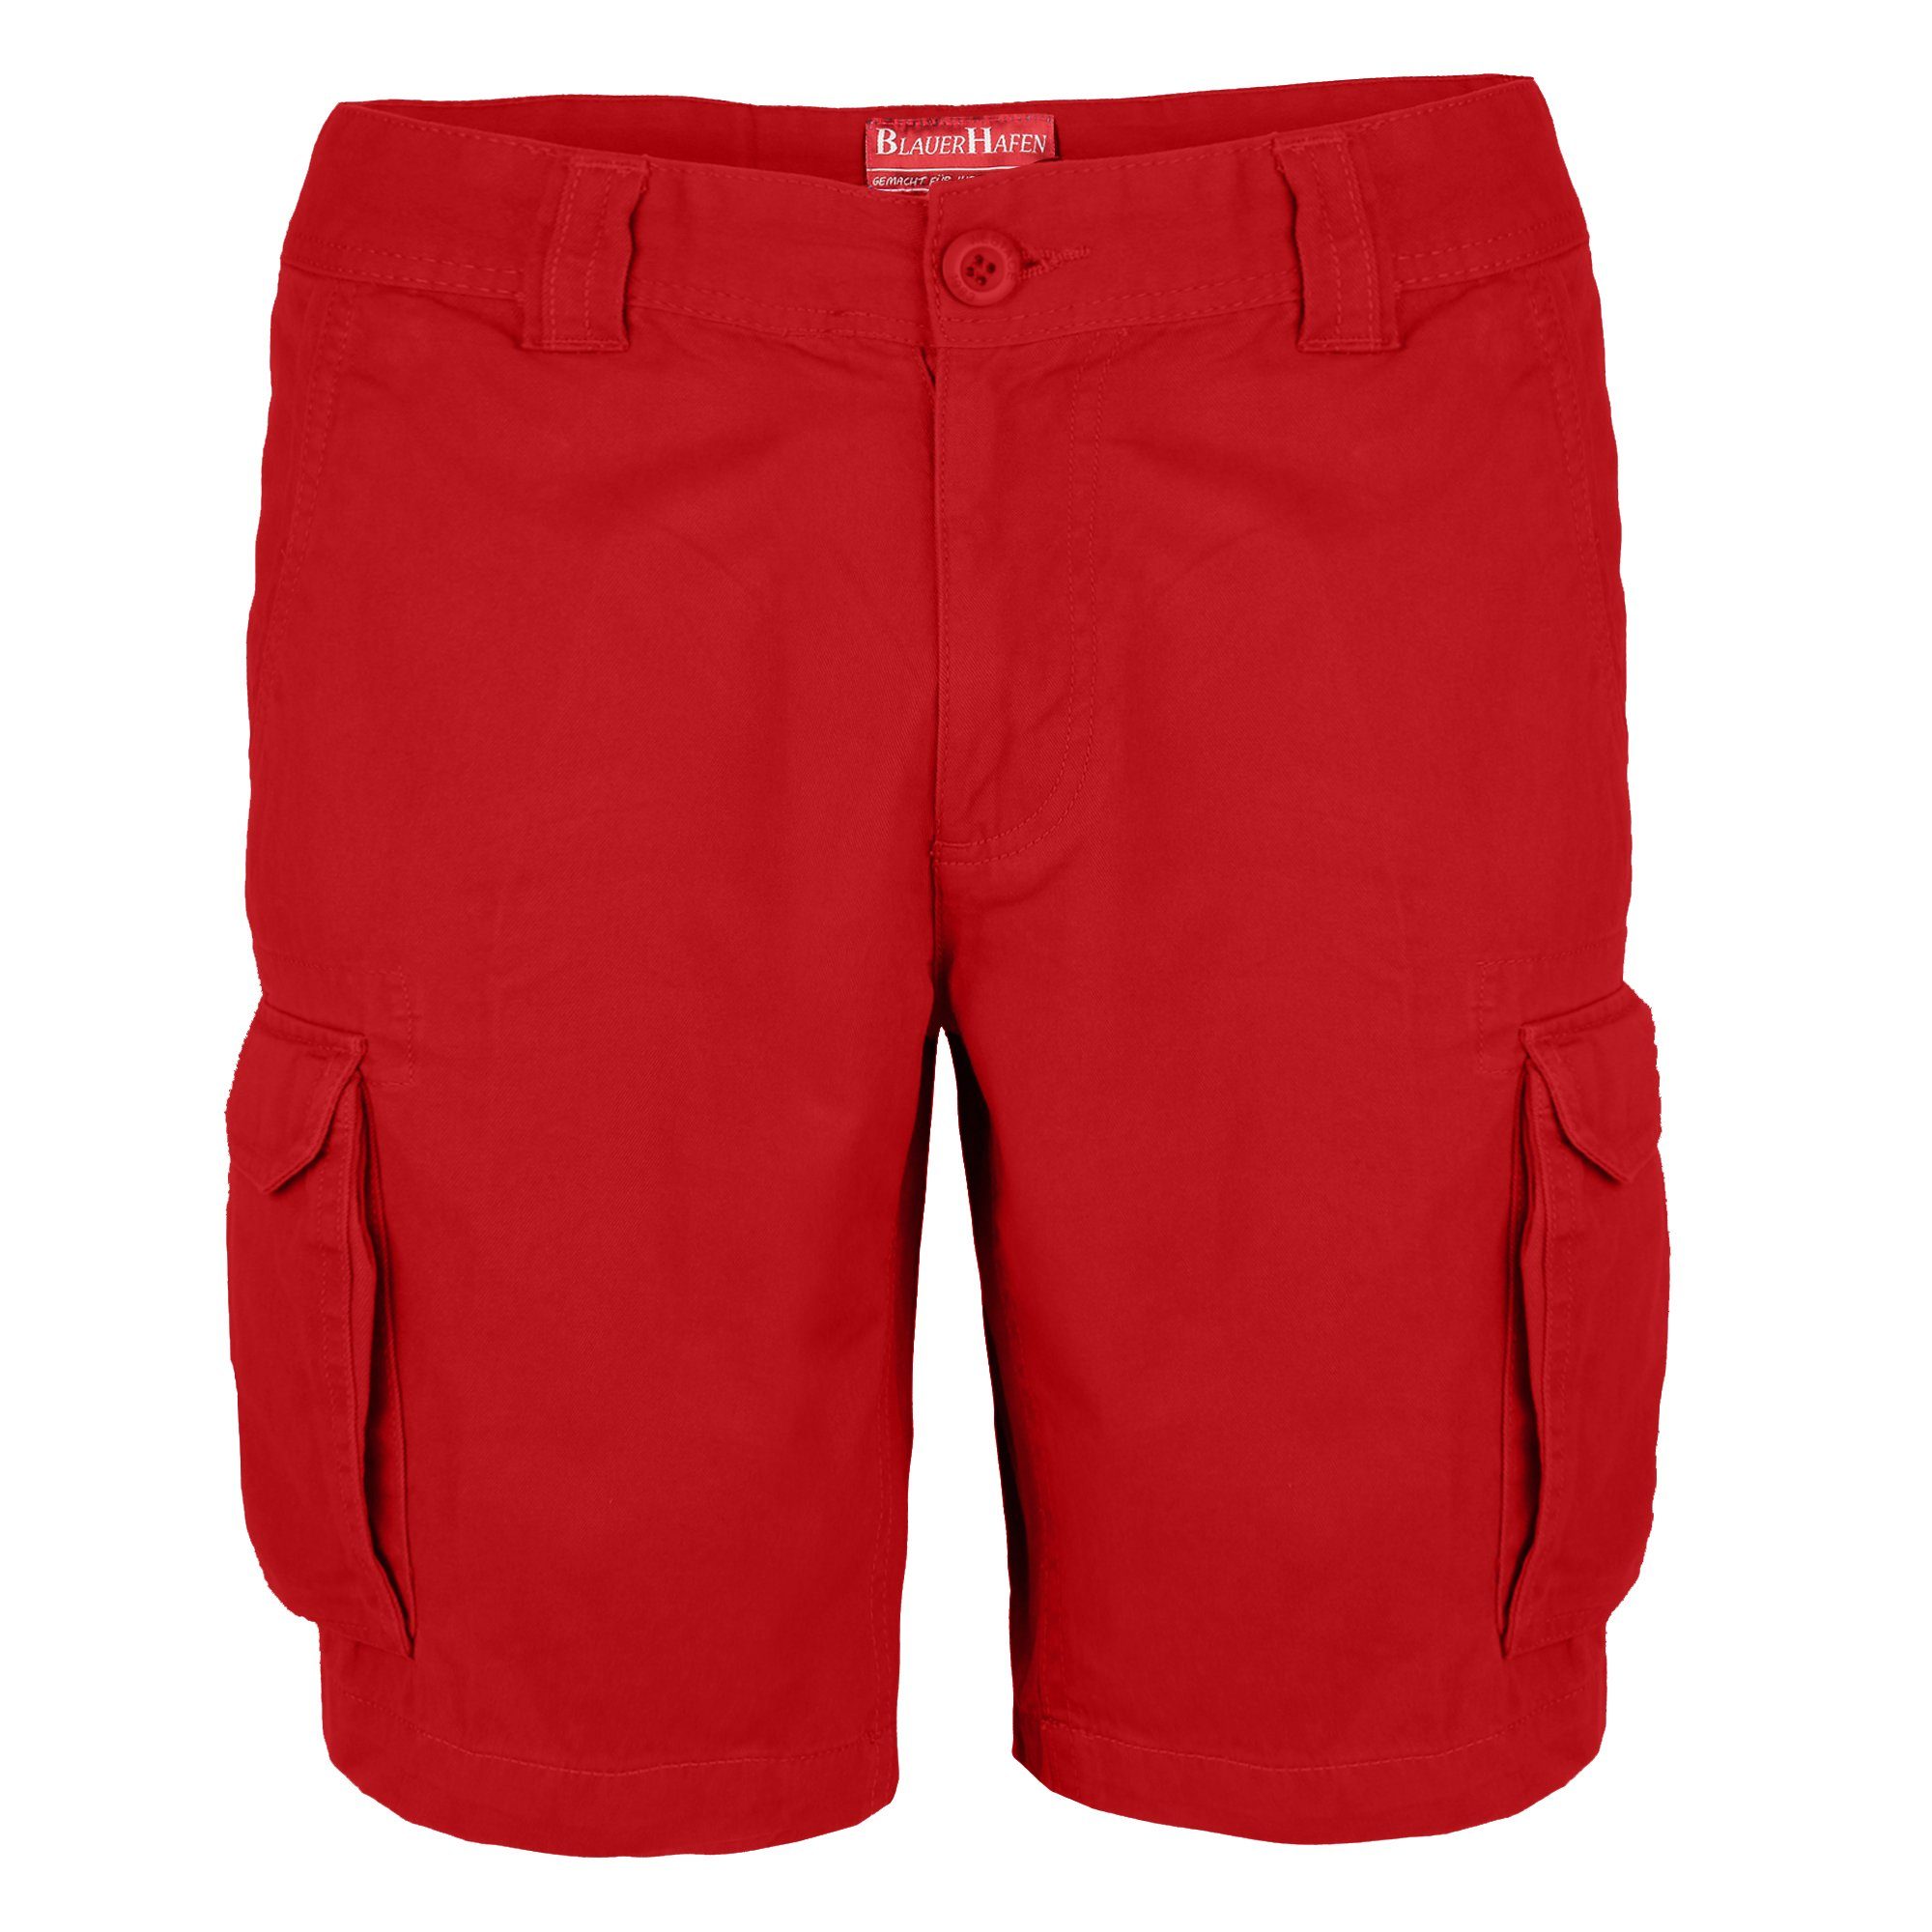 BlauerHafen Cargoshorts Herren Cargo Shorts 100% Baumwolle Hose Normale Passform Bermuda Rot